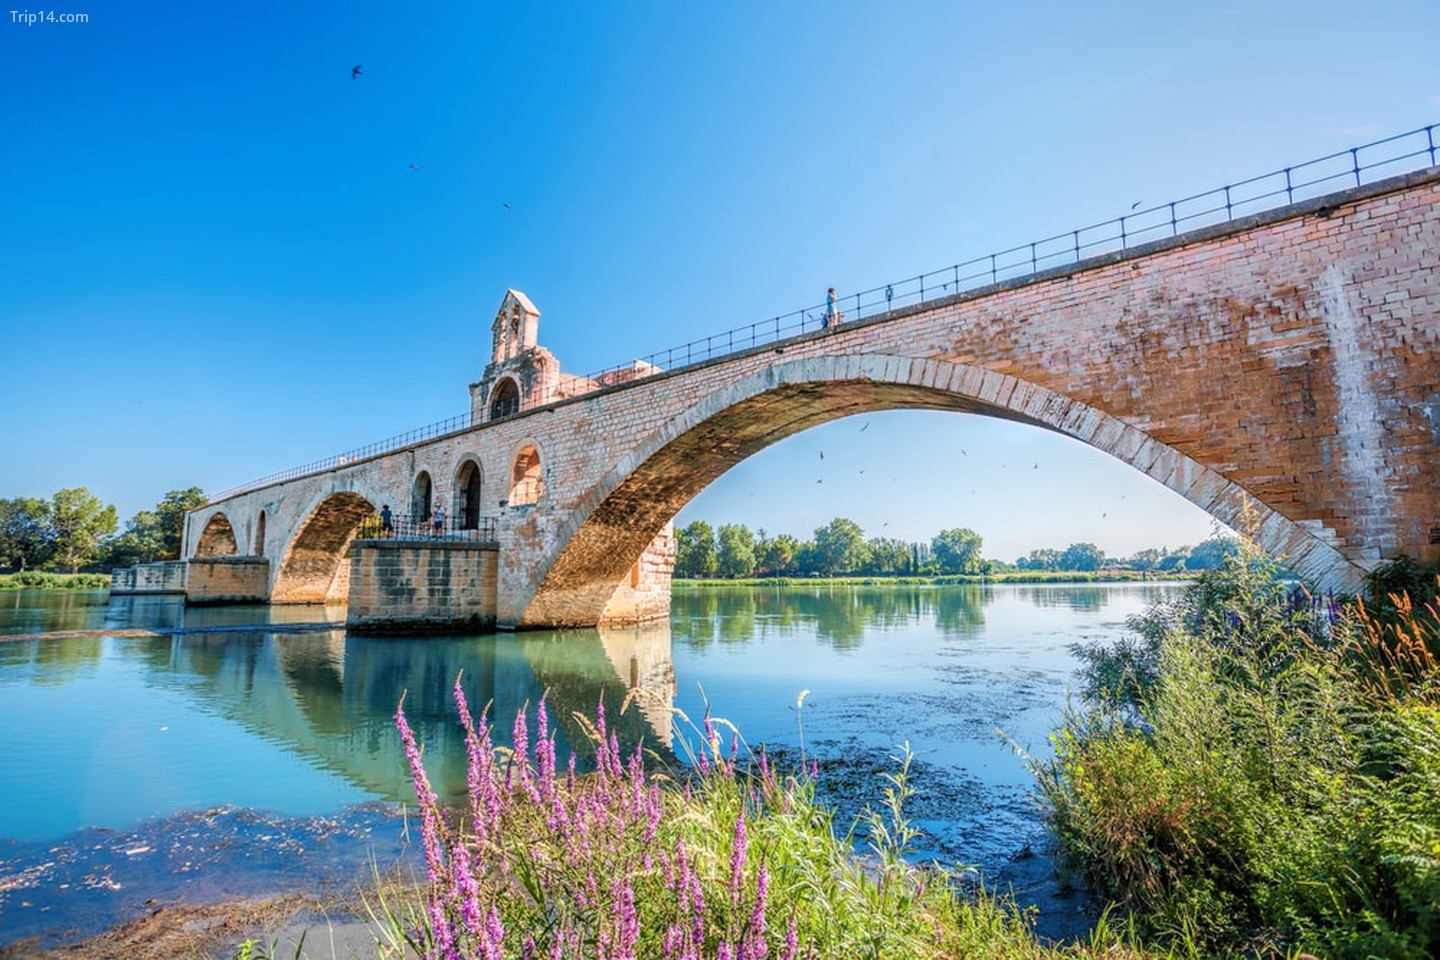 Cây cầu nổi tiếng ở Avignon